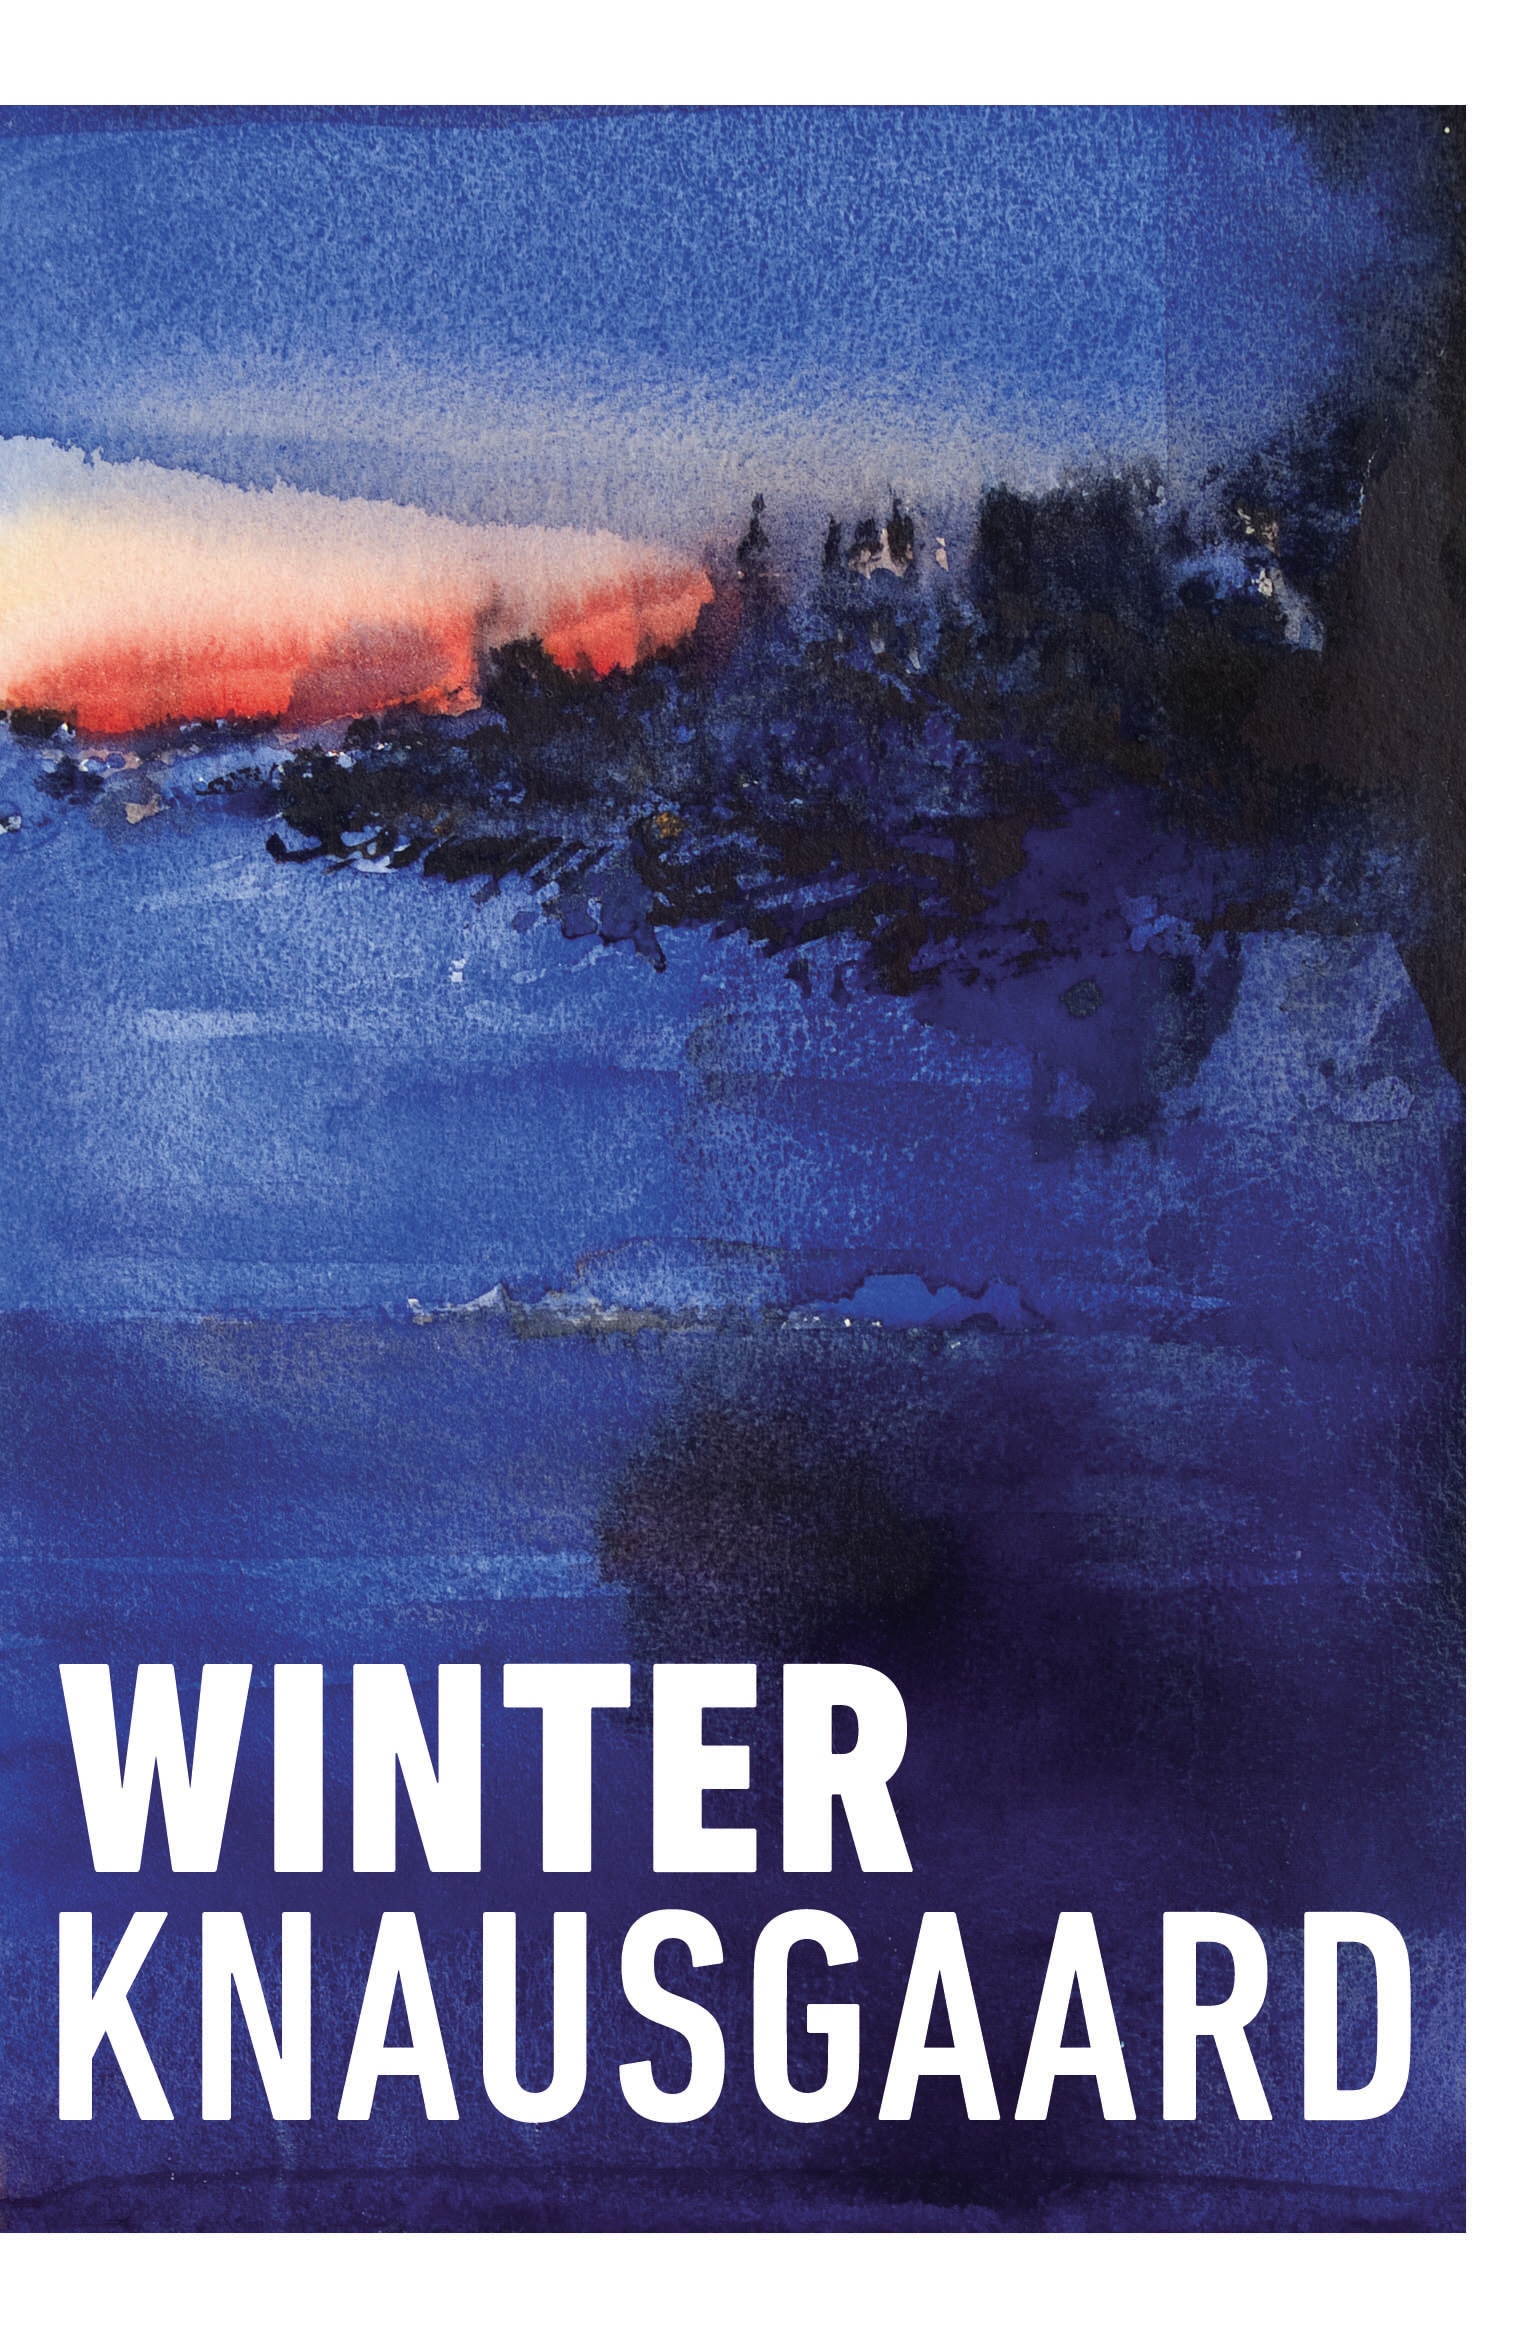 Book “Winter” by Karl Ove Knausgaard — November 18, 2021